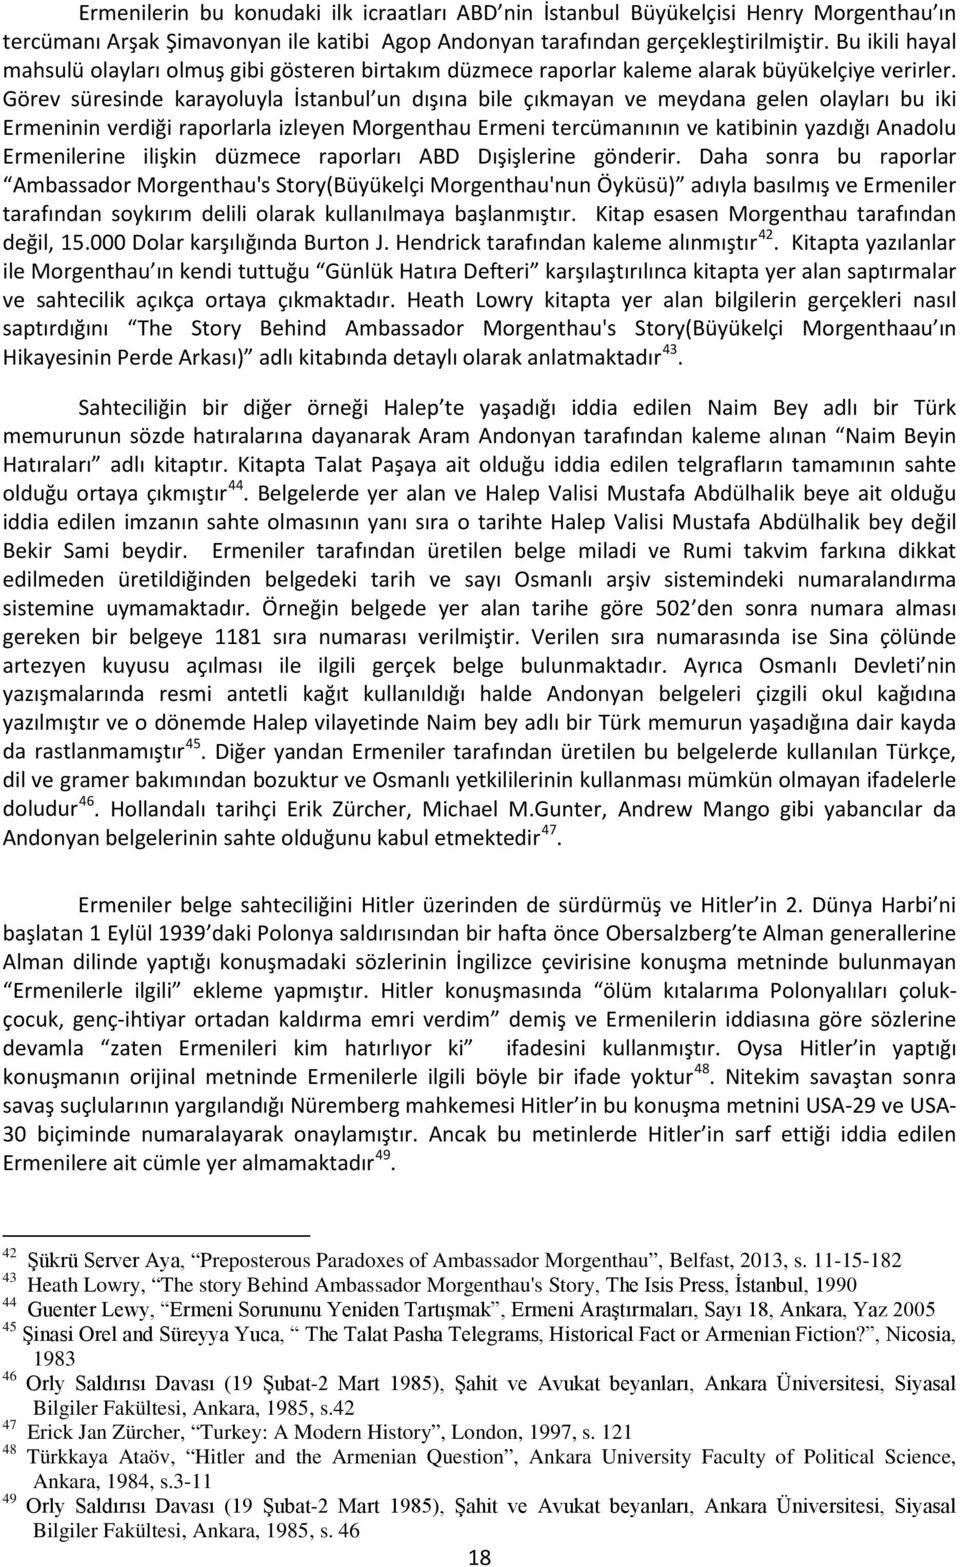 Görev süresinde karayoluyla İstanbul un dışına bile çıkmayan ve meydana gelen olayları bu iki Ermeninin verdiği raporlarla izleyen Morgenthau Ermeni tercümanının ve katibinin yazdığı Anadolu